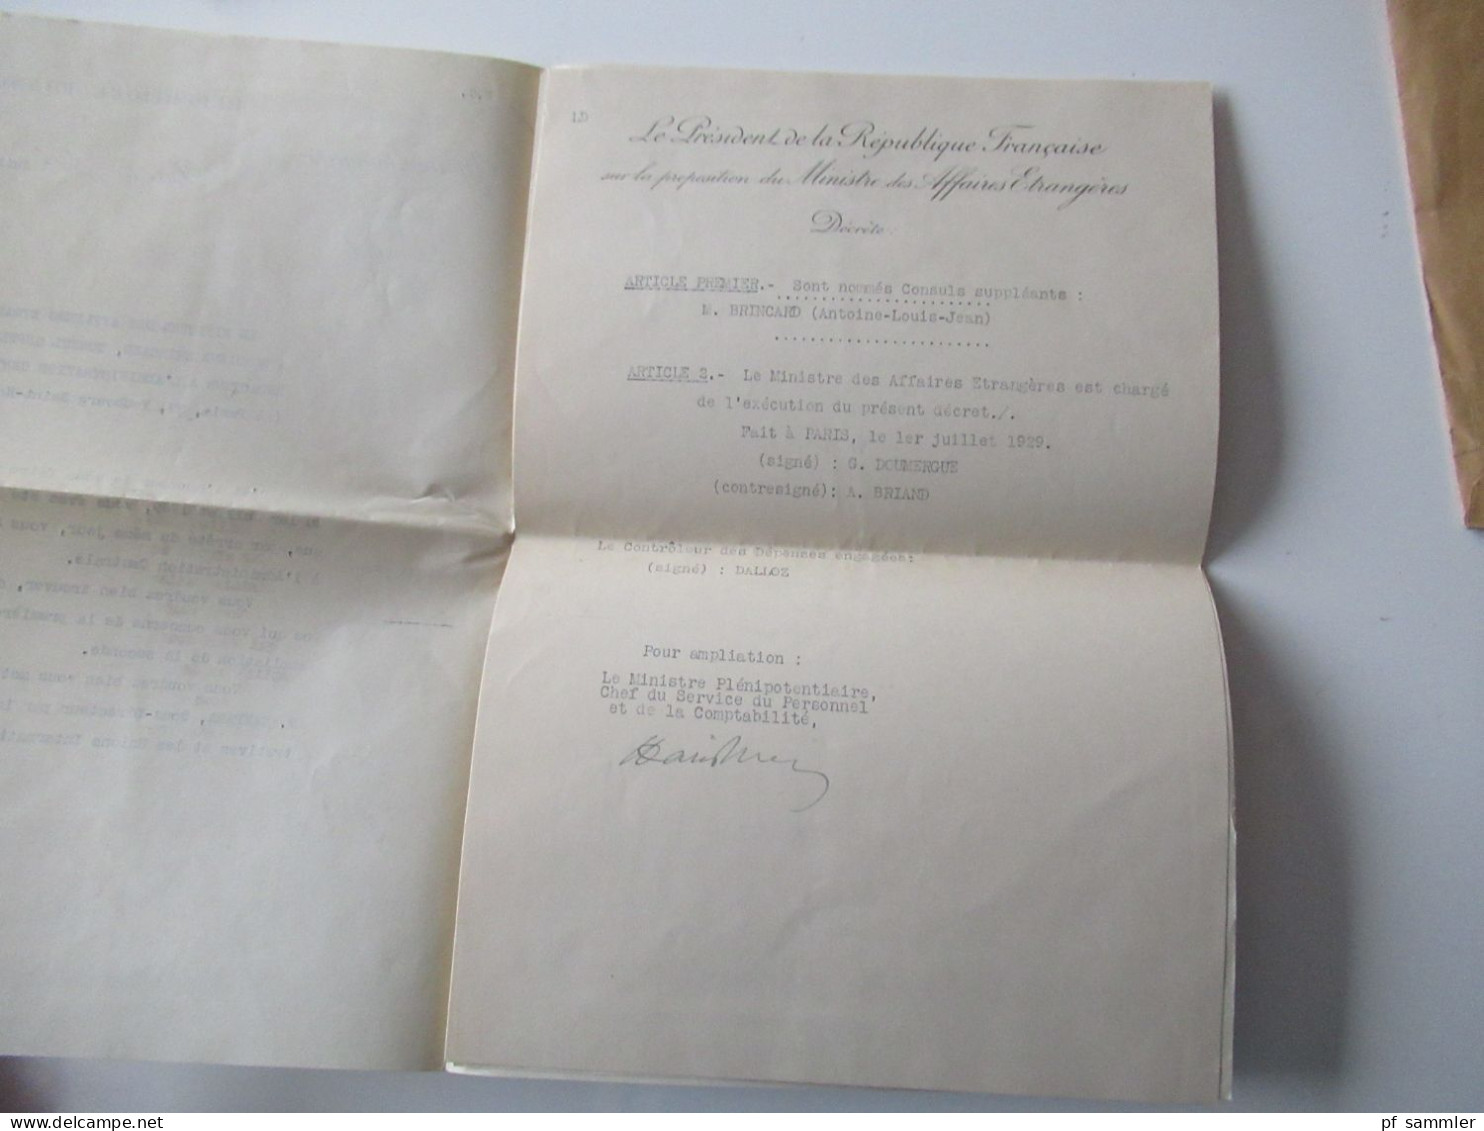 Frankreich 1929 Umschlag und Stempel Ministere Des Affaires Etrangeres / Mit Inhalt und Autographen! Interessant ?!